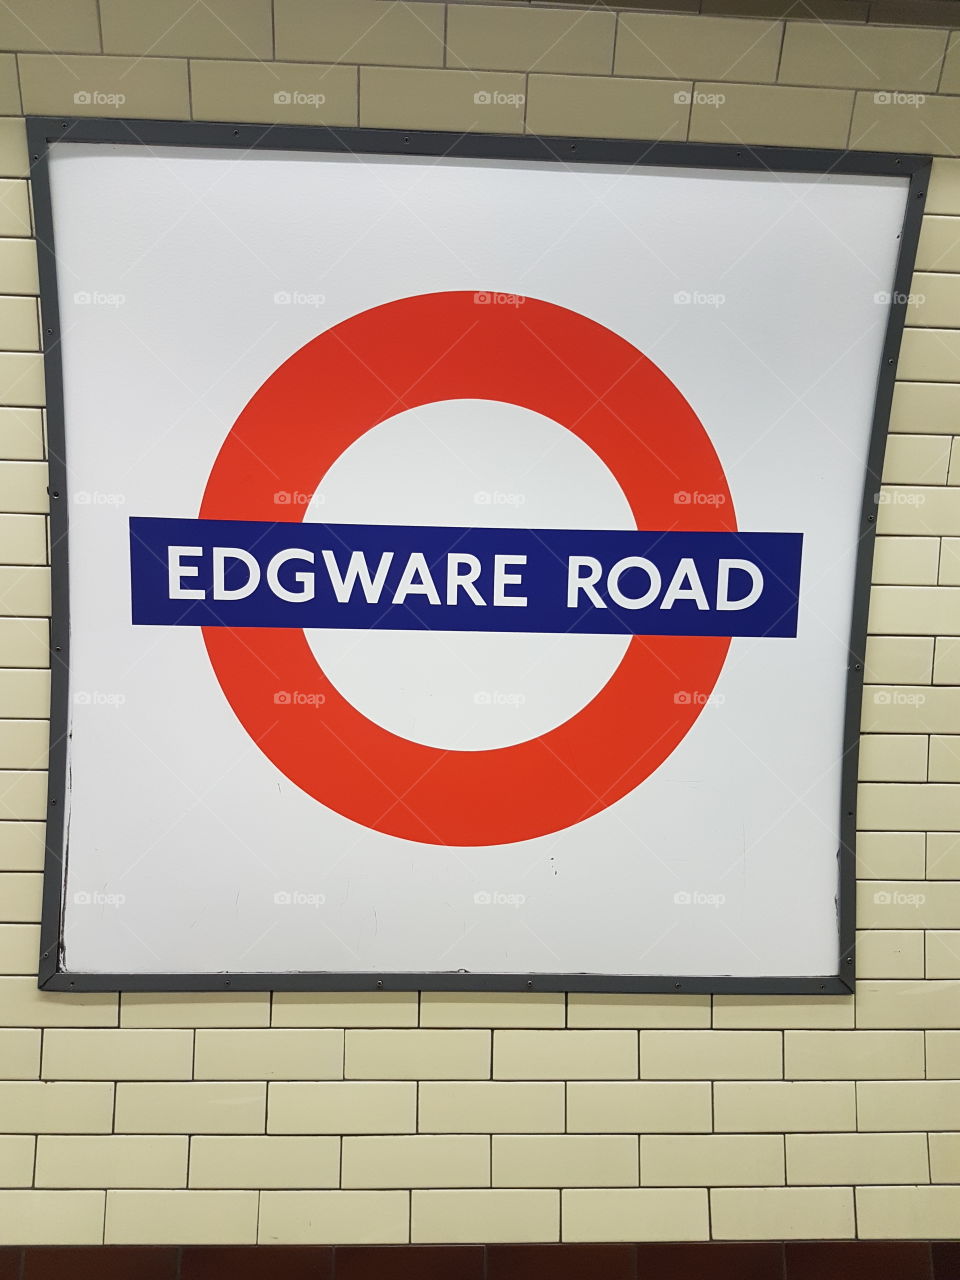 Edgware road station underground